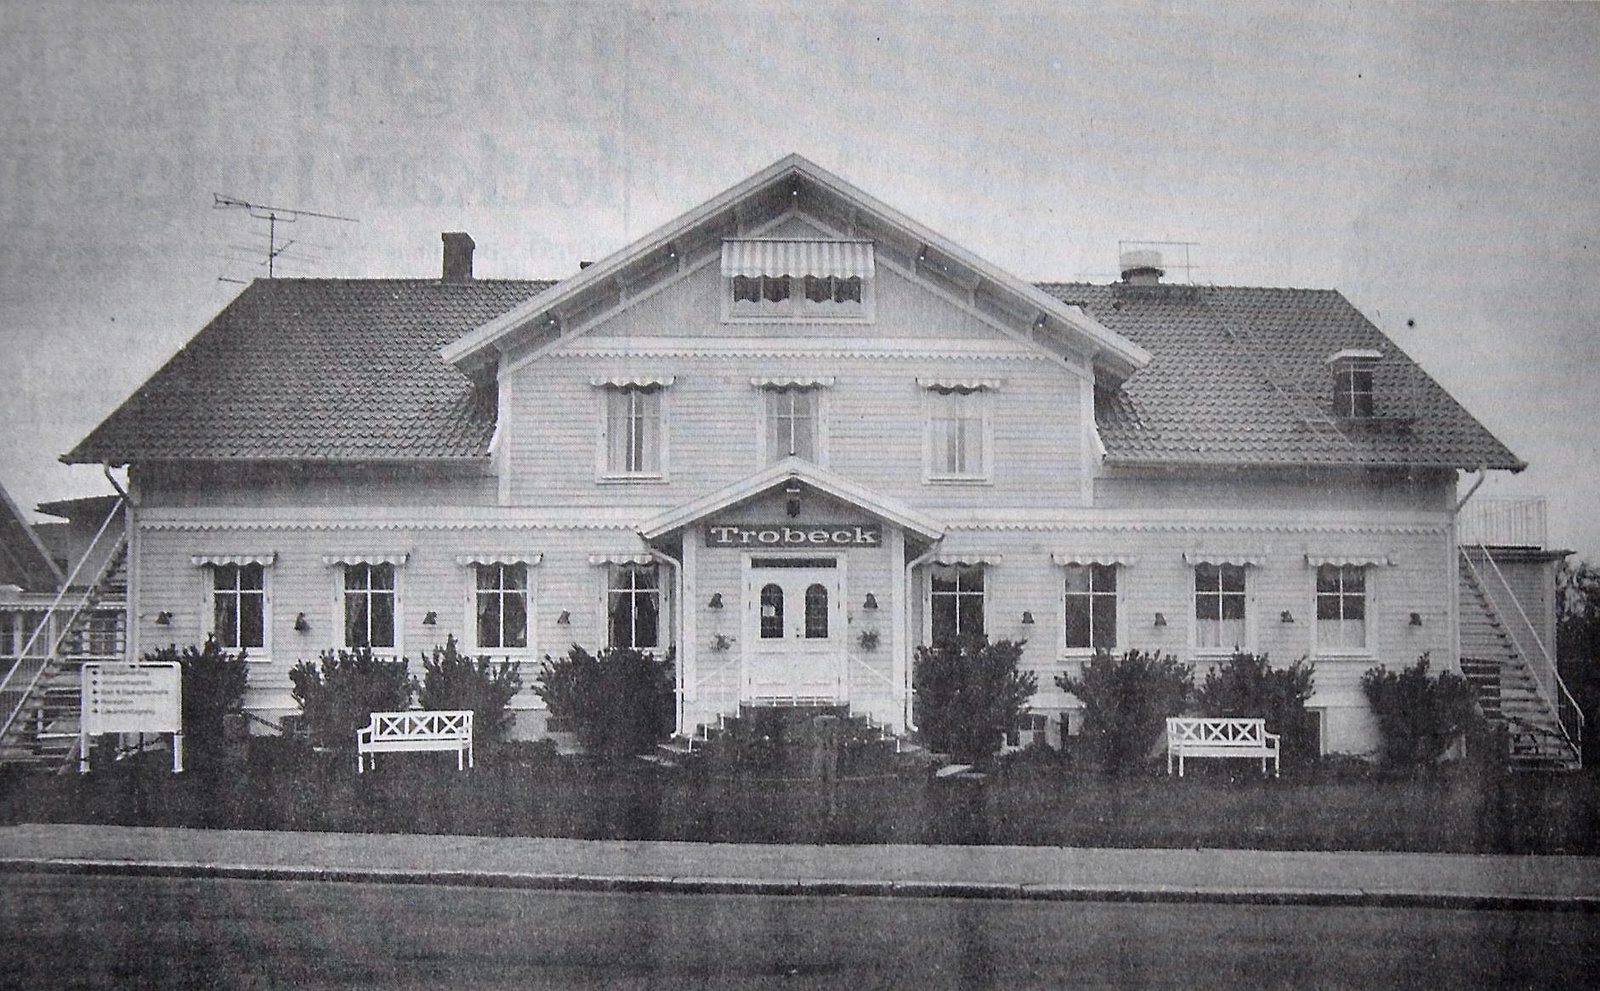 Namnet Trobeck lever kvar på Trobeck rehab center i Vittsjö. Det mesta av exteriören från 1800-talet har bevarats.
Arkiv: Stefan Sandström